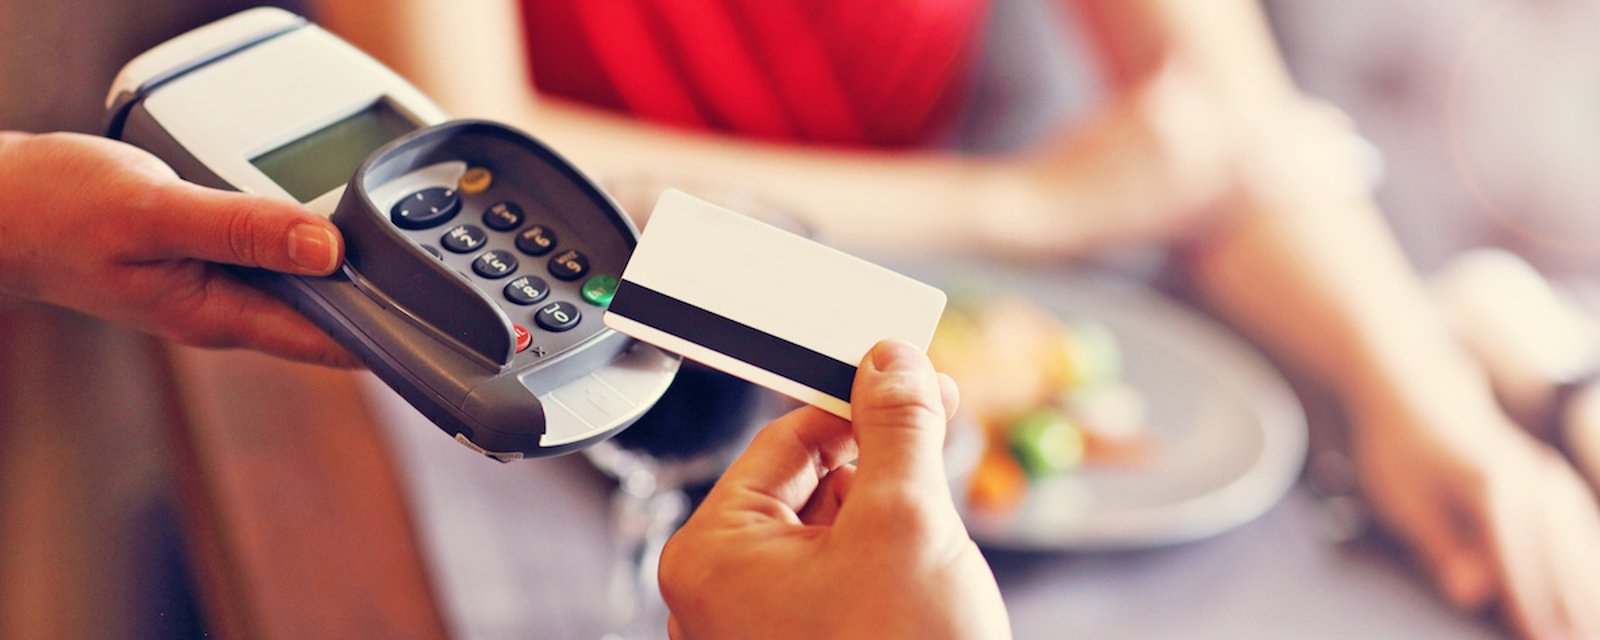 Lorsque vous laissez un pourboire par carte de crédit ou de débit, vous payez probablement plus de 15% de la facture